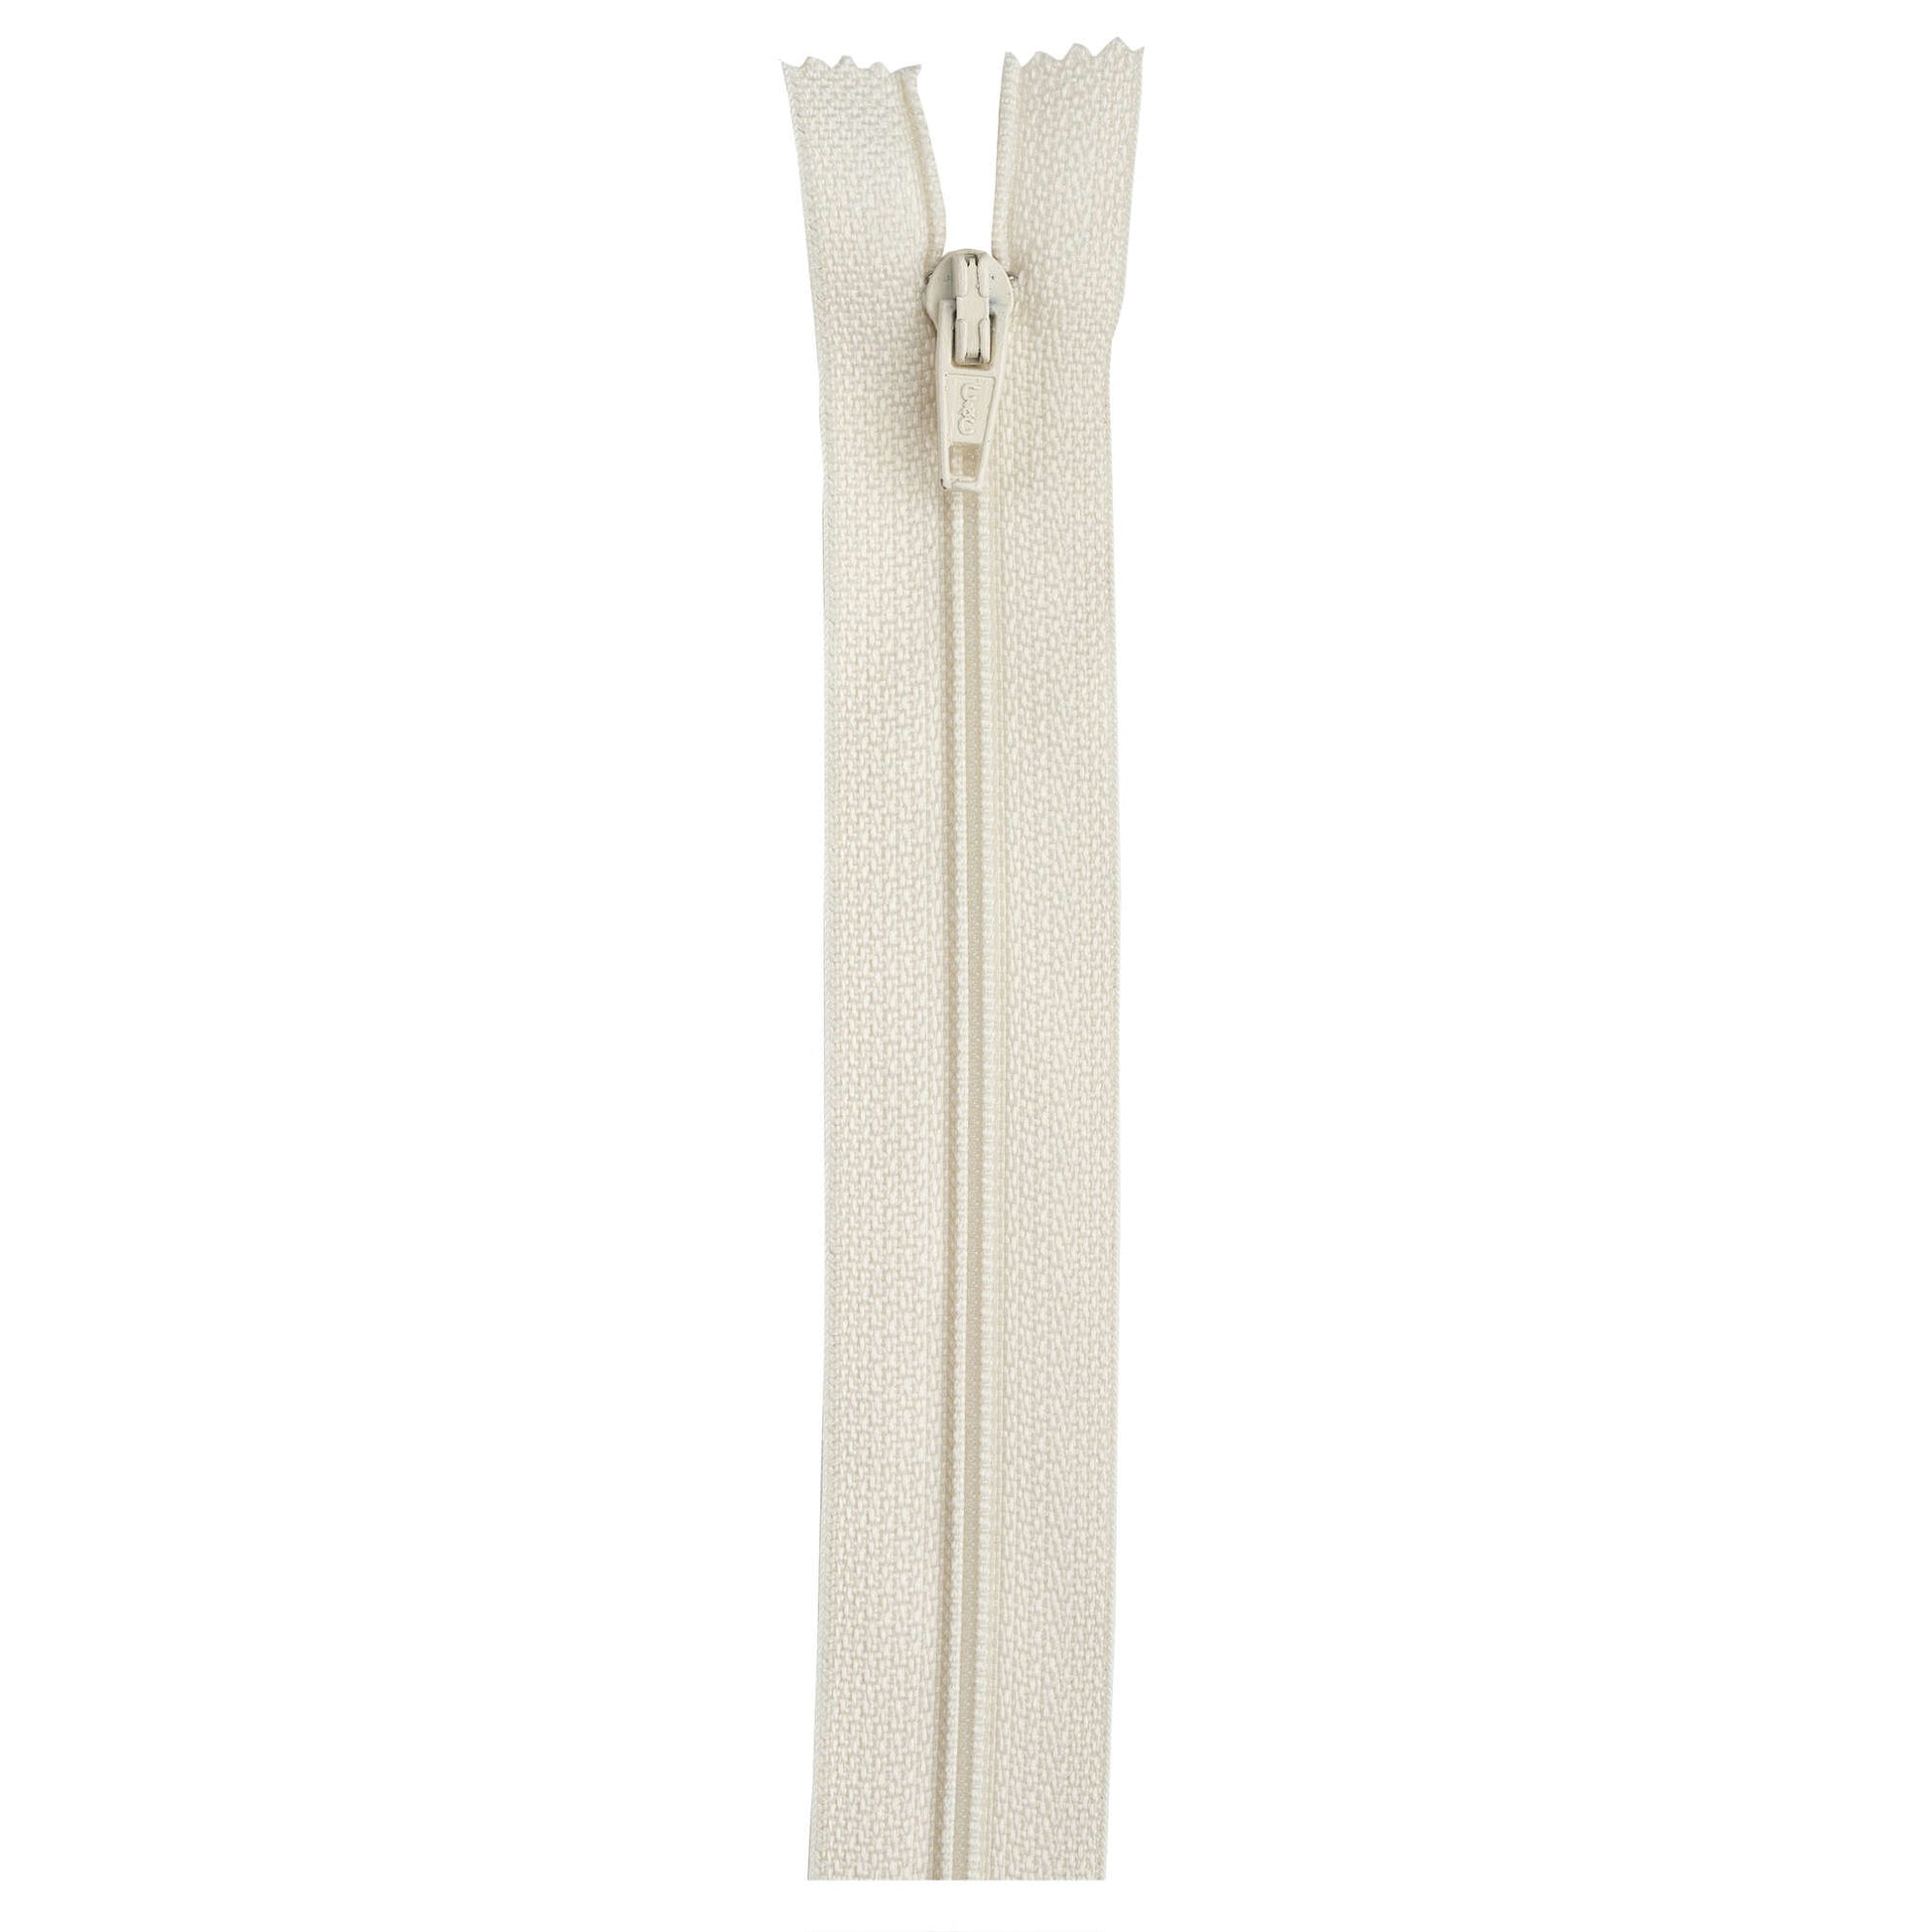 Coats & Clark Lightweight Separating Zipper 10- White